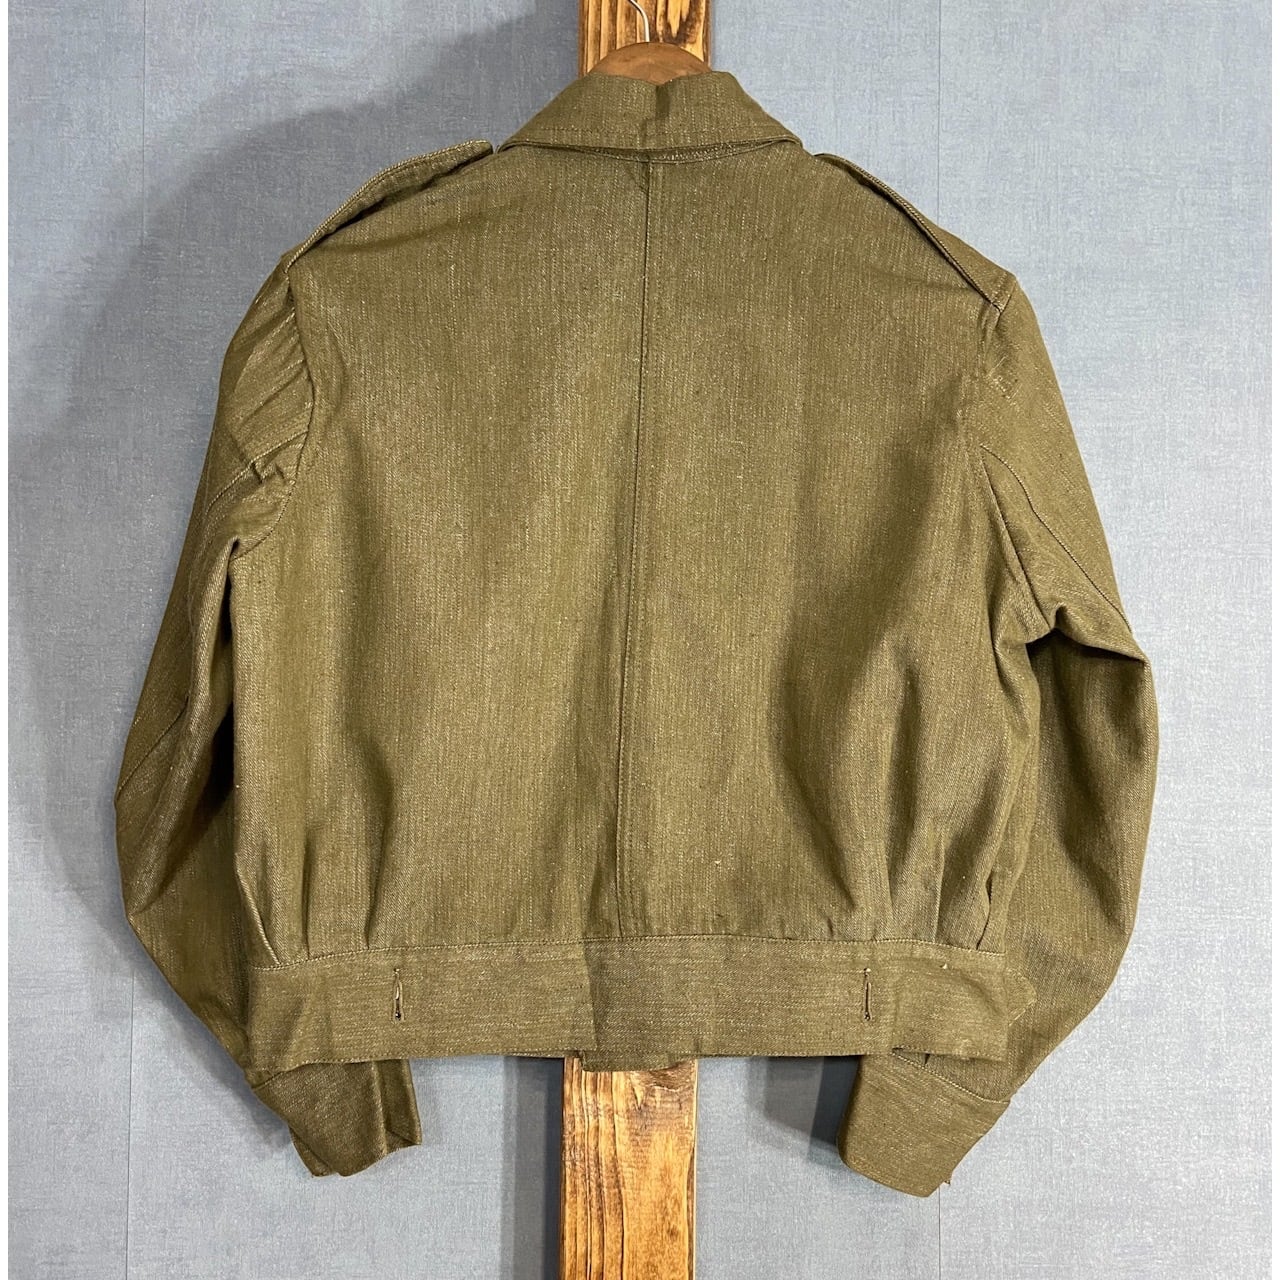 s, DS“British Army” Green Denim Battle Dress Jacket Size 4